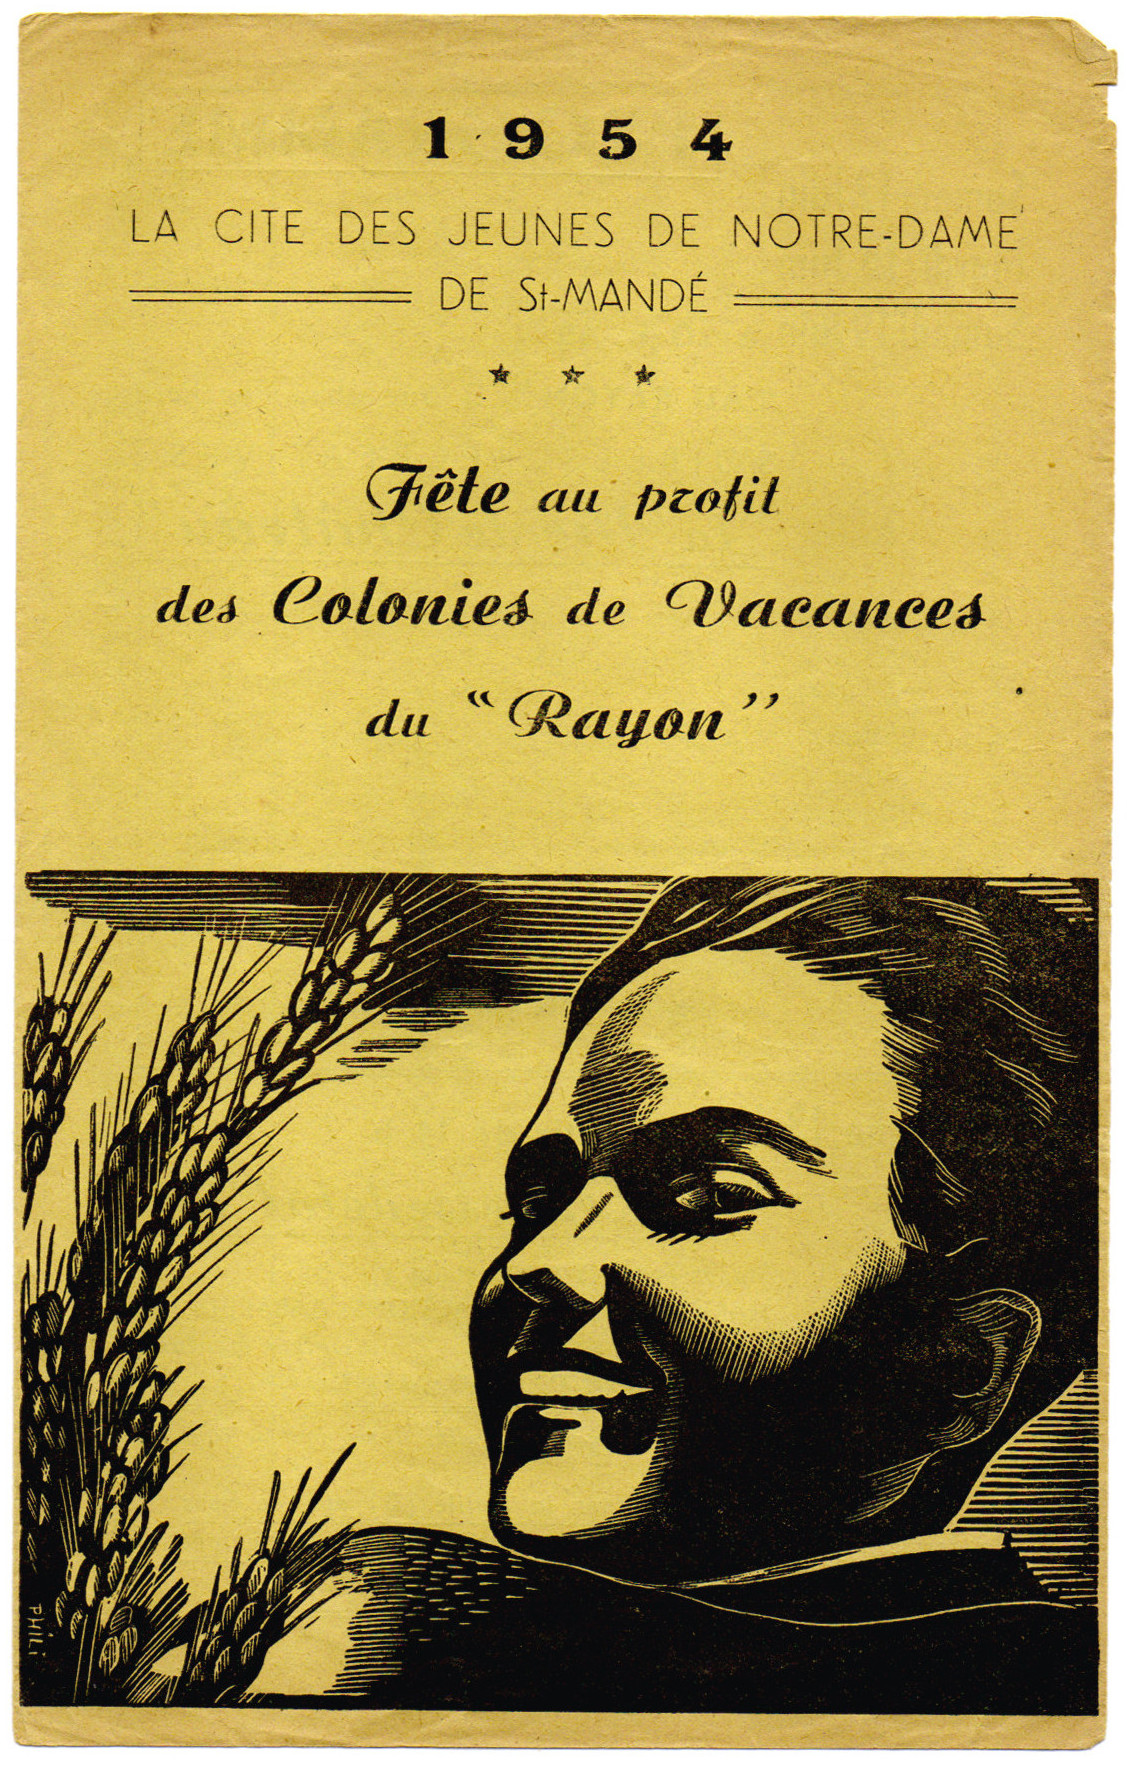 Affiche du Rayon 1954 (recto)